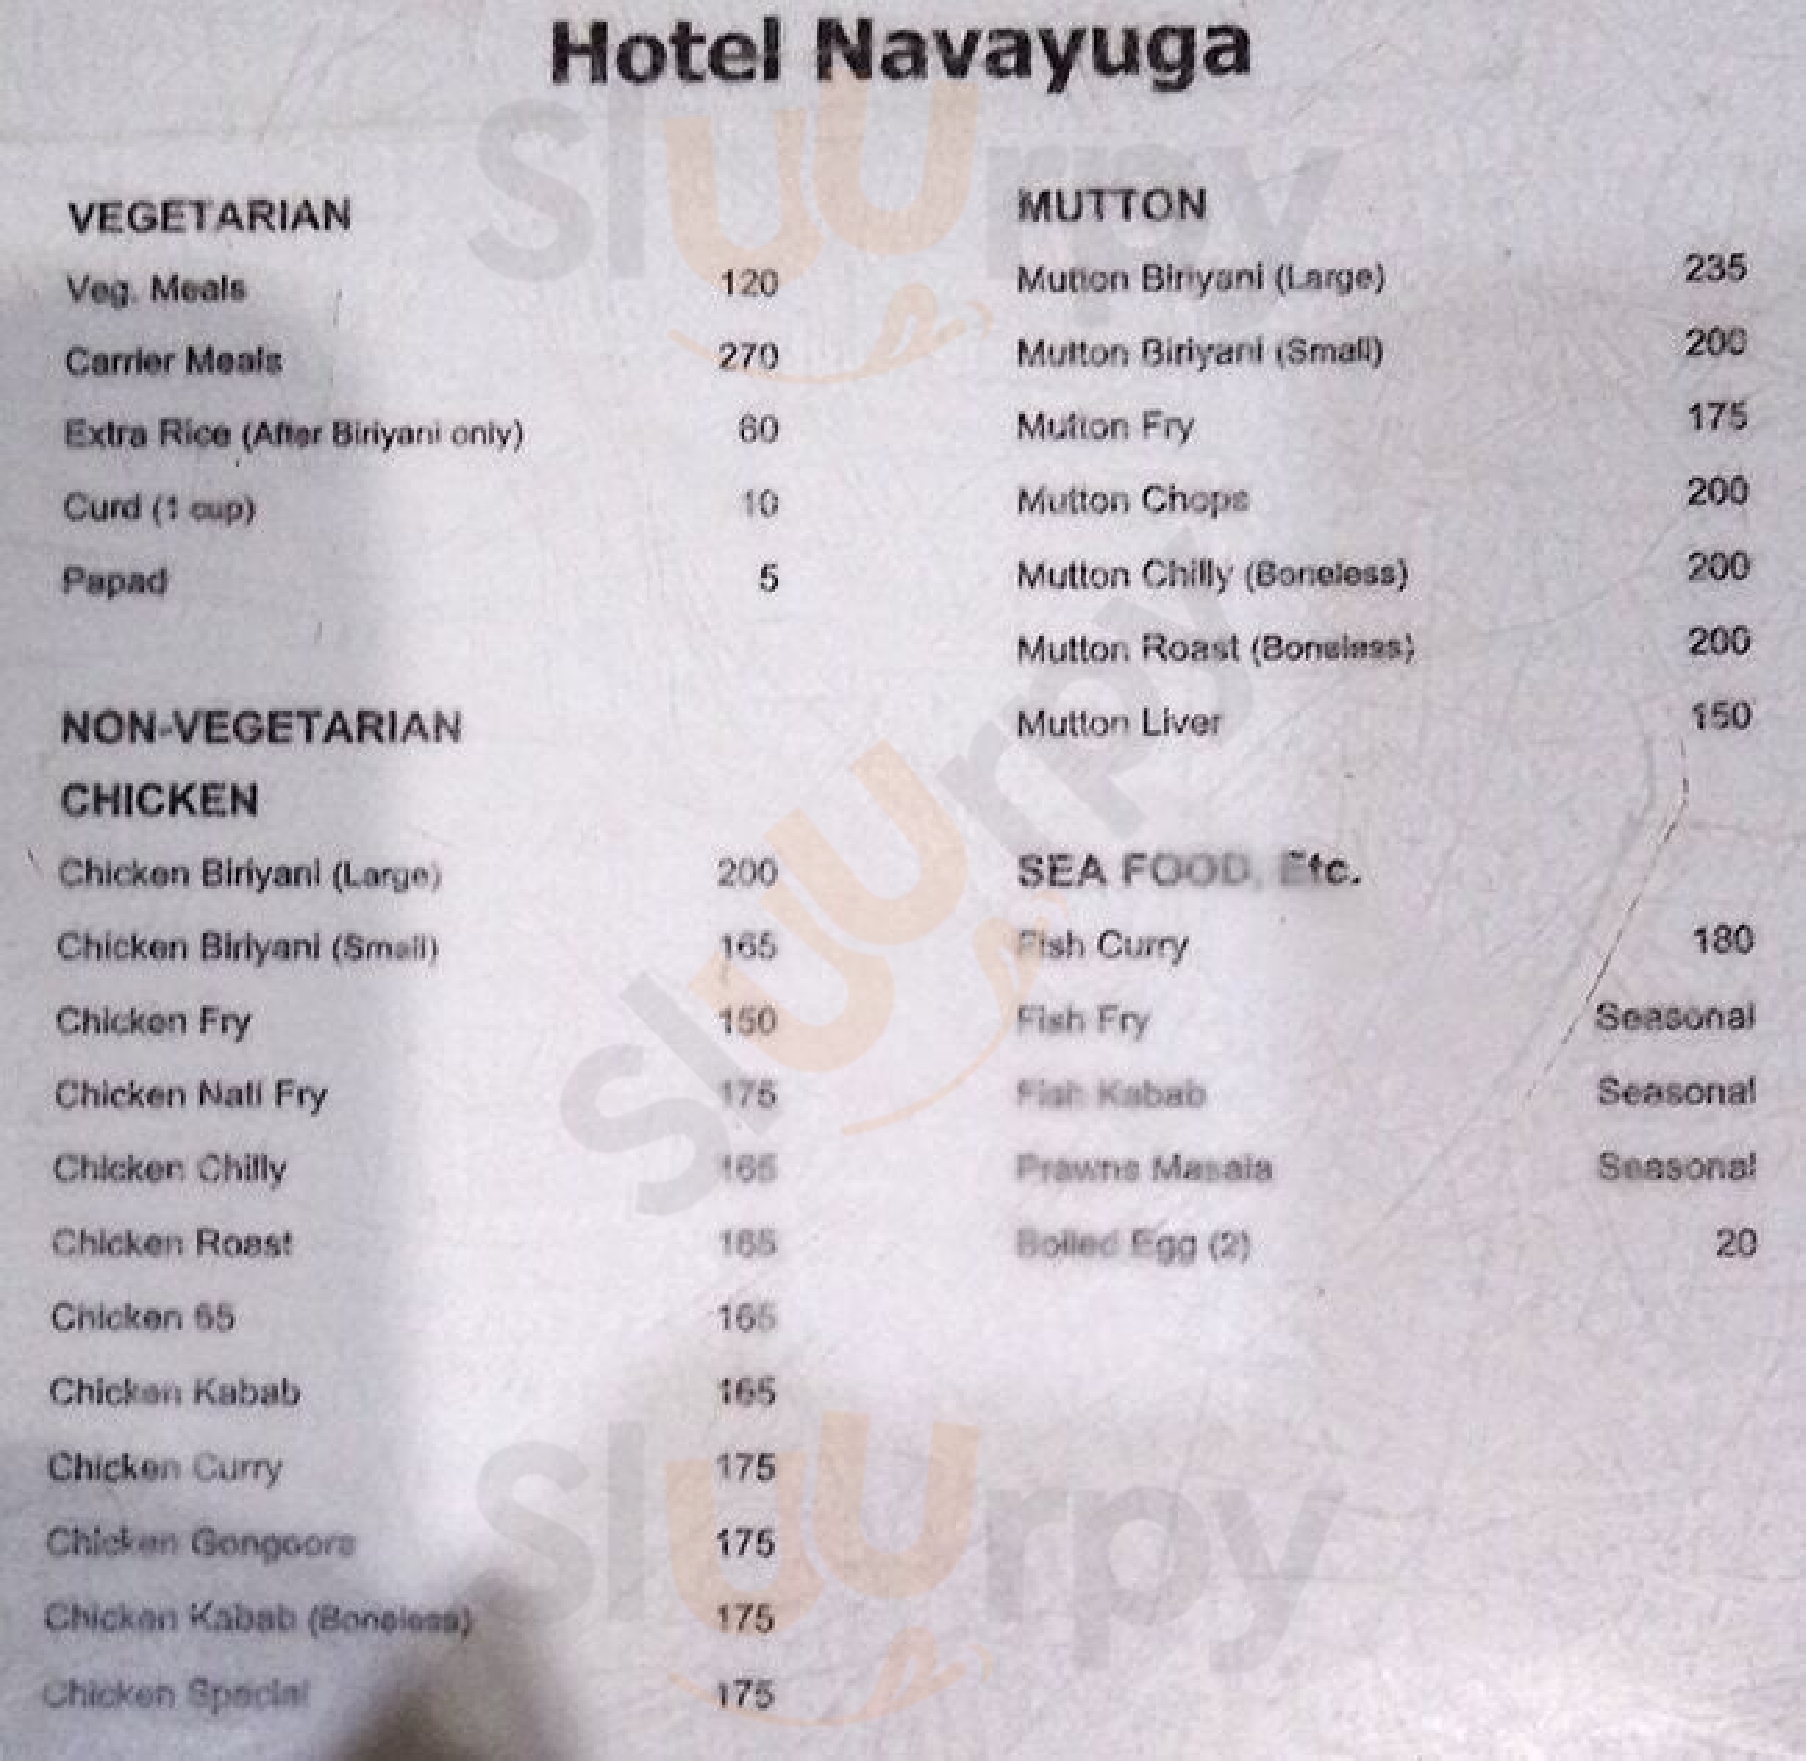 Hotel Navayuga Bengaluru Menu - 1